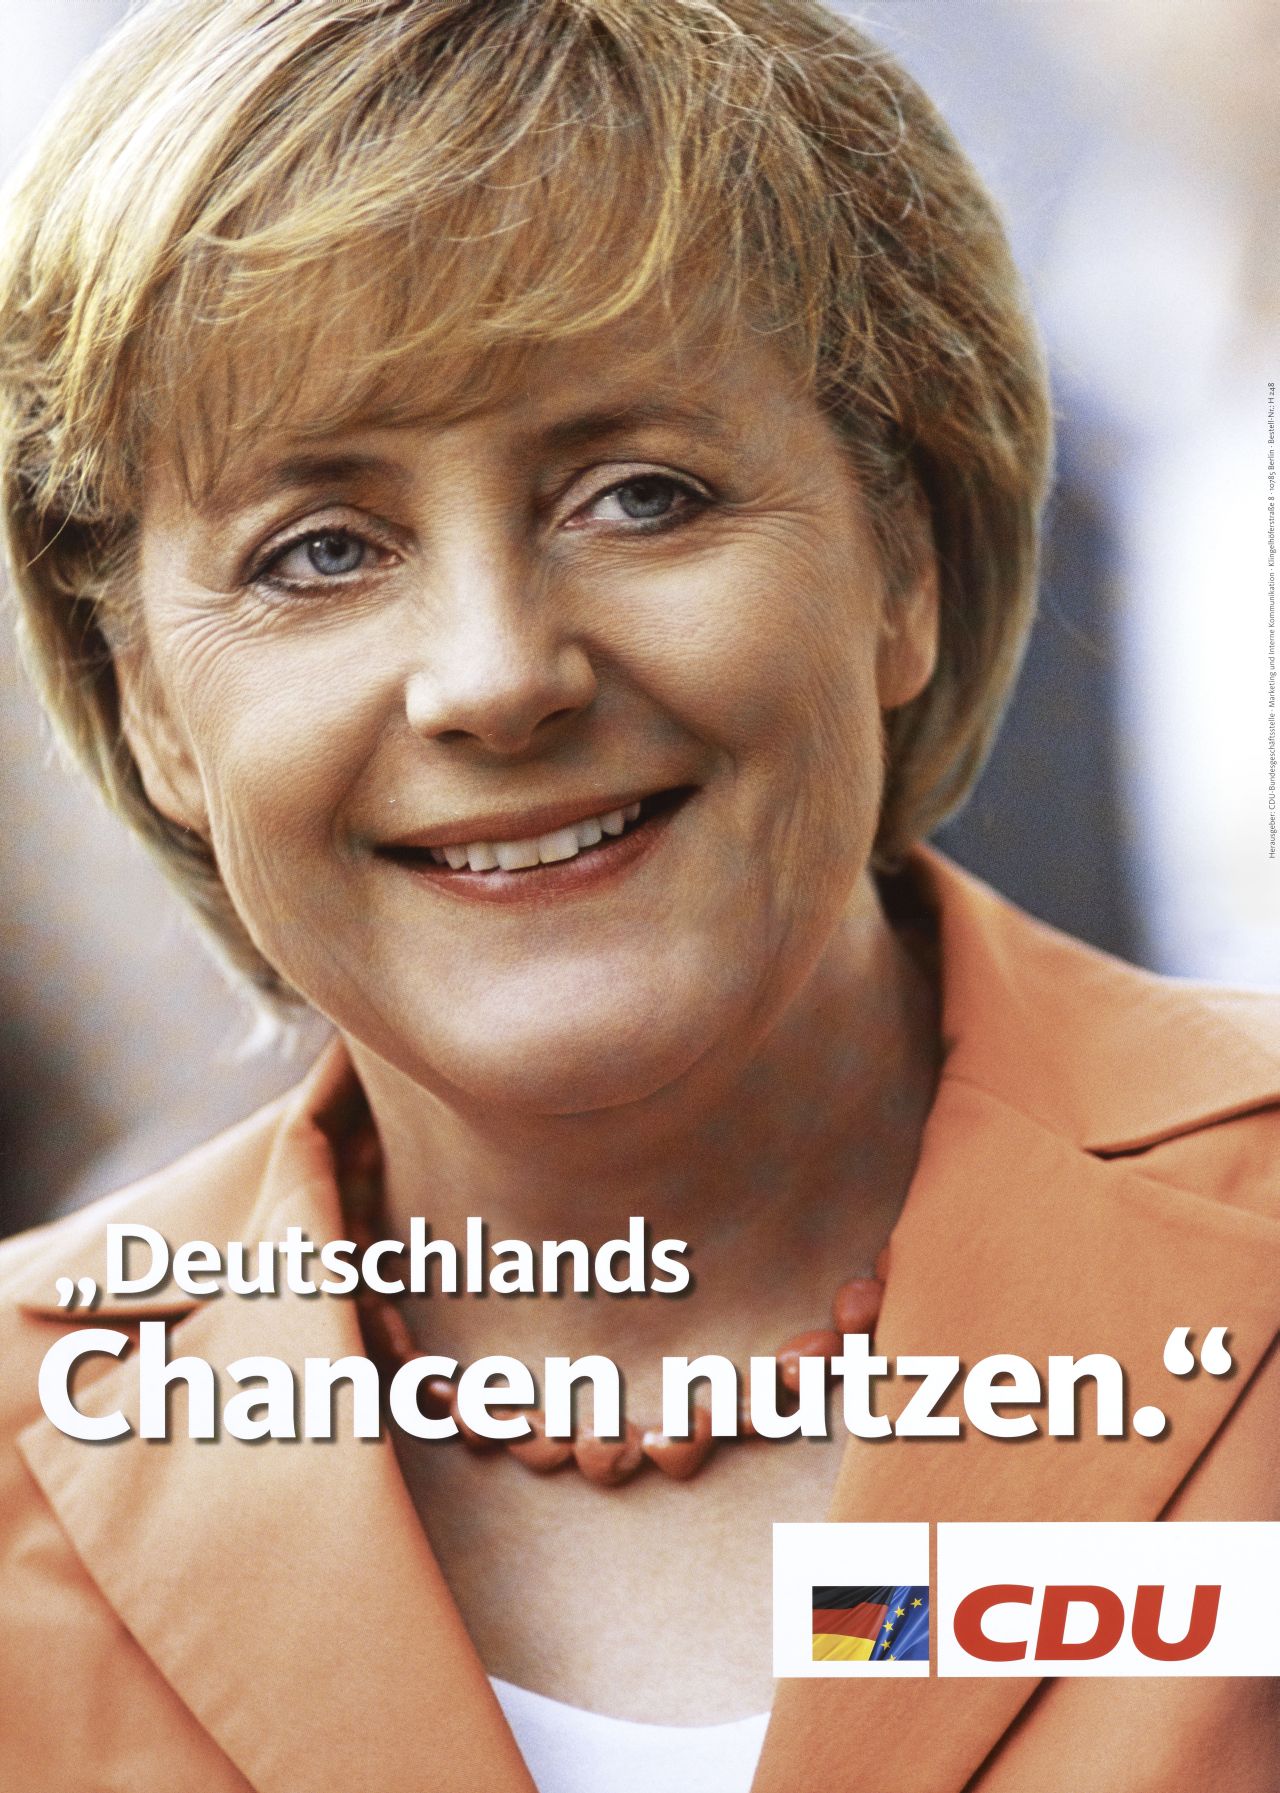 Farbiges Plakat; großes Porträtfoto der lächelnden Angela Merkel; im unteren Drittel, in weißer Schrift: Deutschlands / Chancen nutzen.; unten, rechts: CDU-Logo.